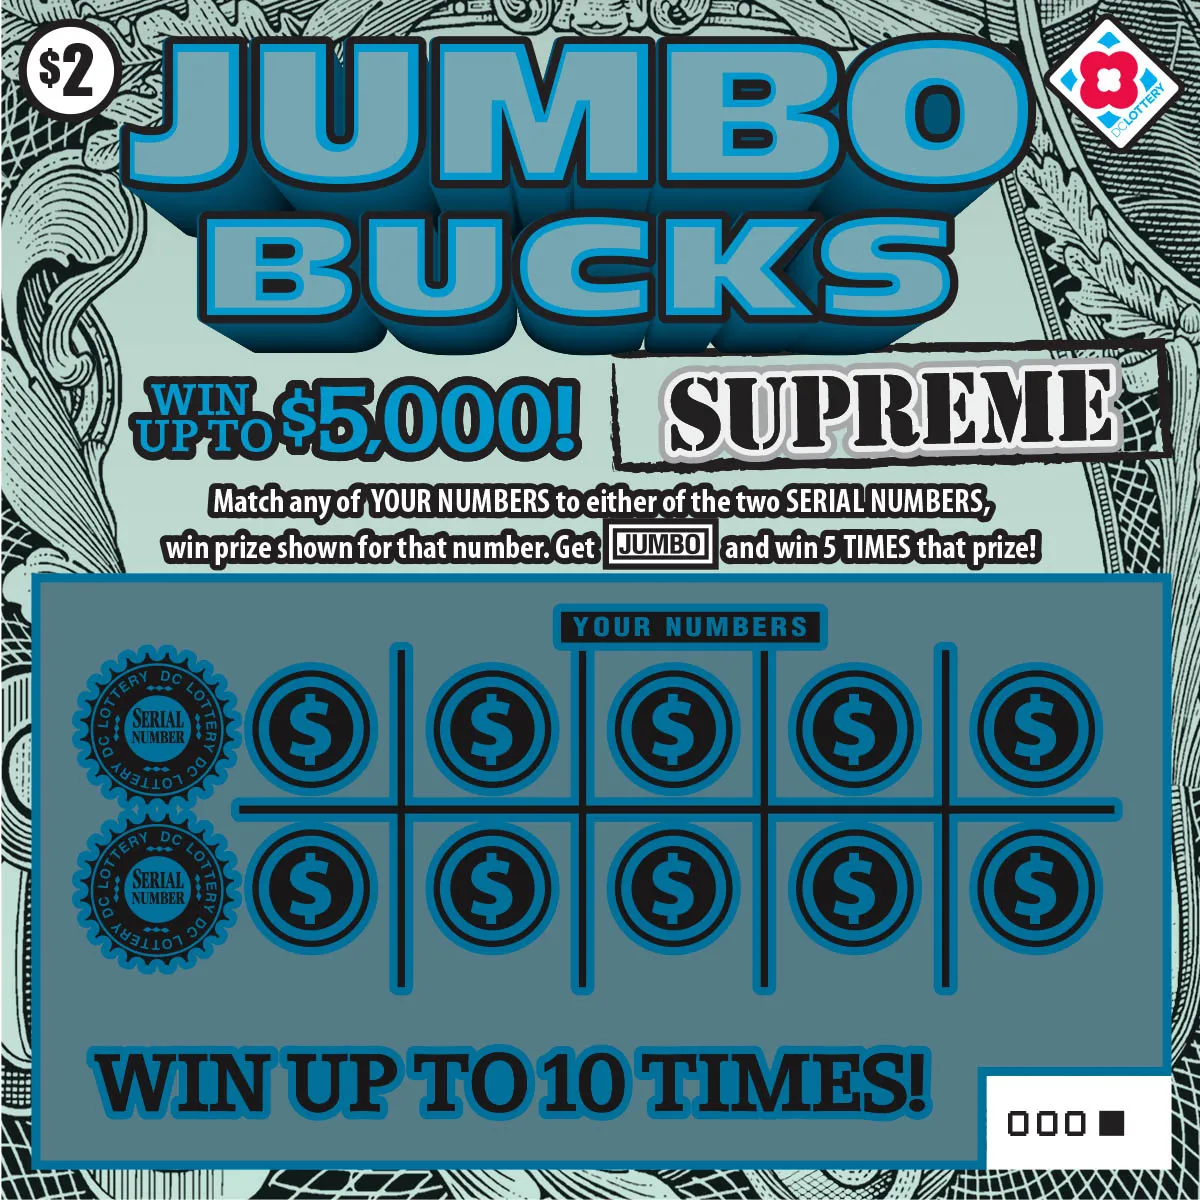 Jumbo Bucks Supreme